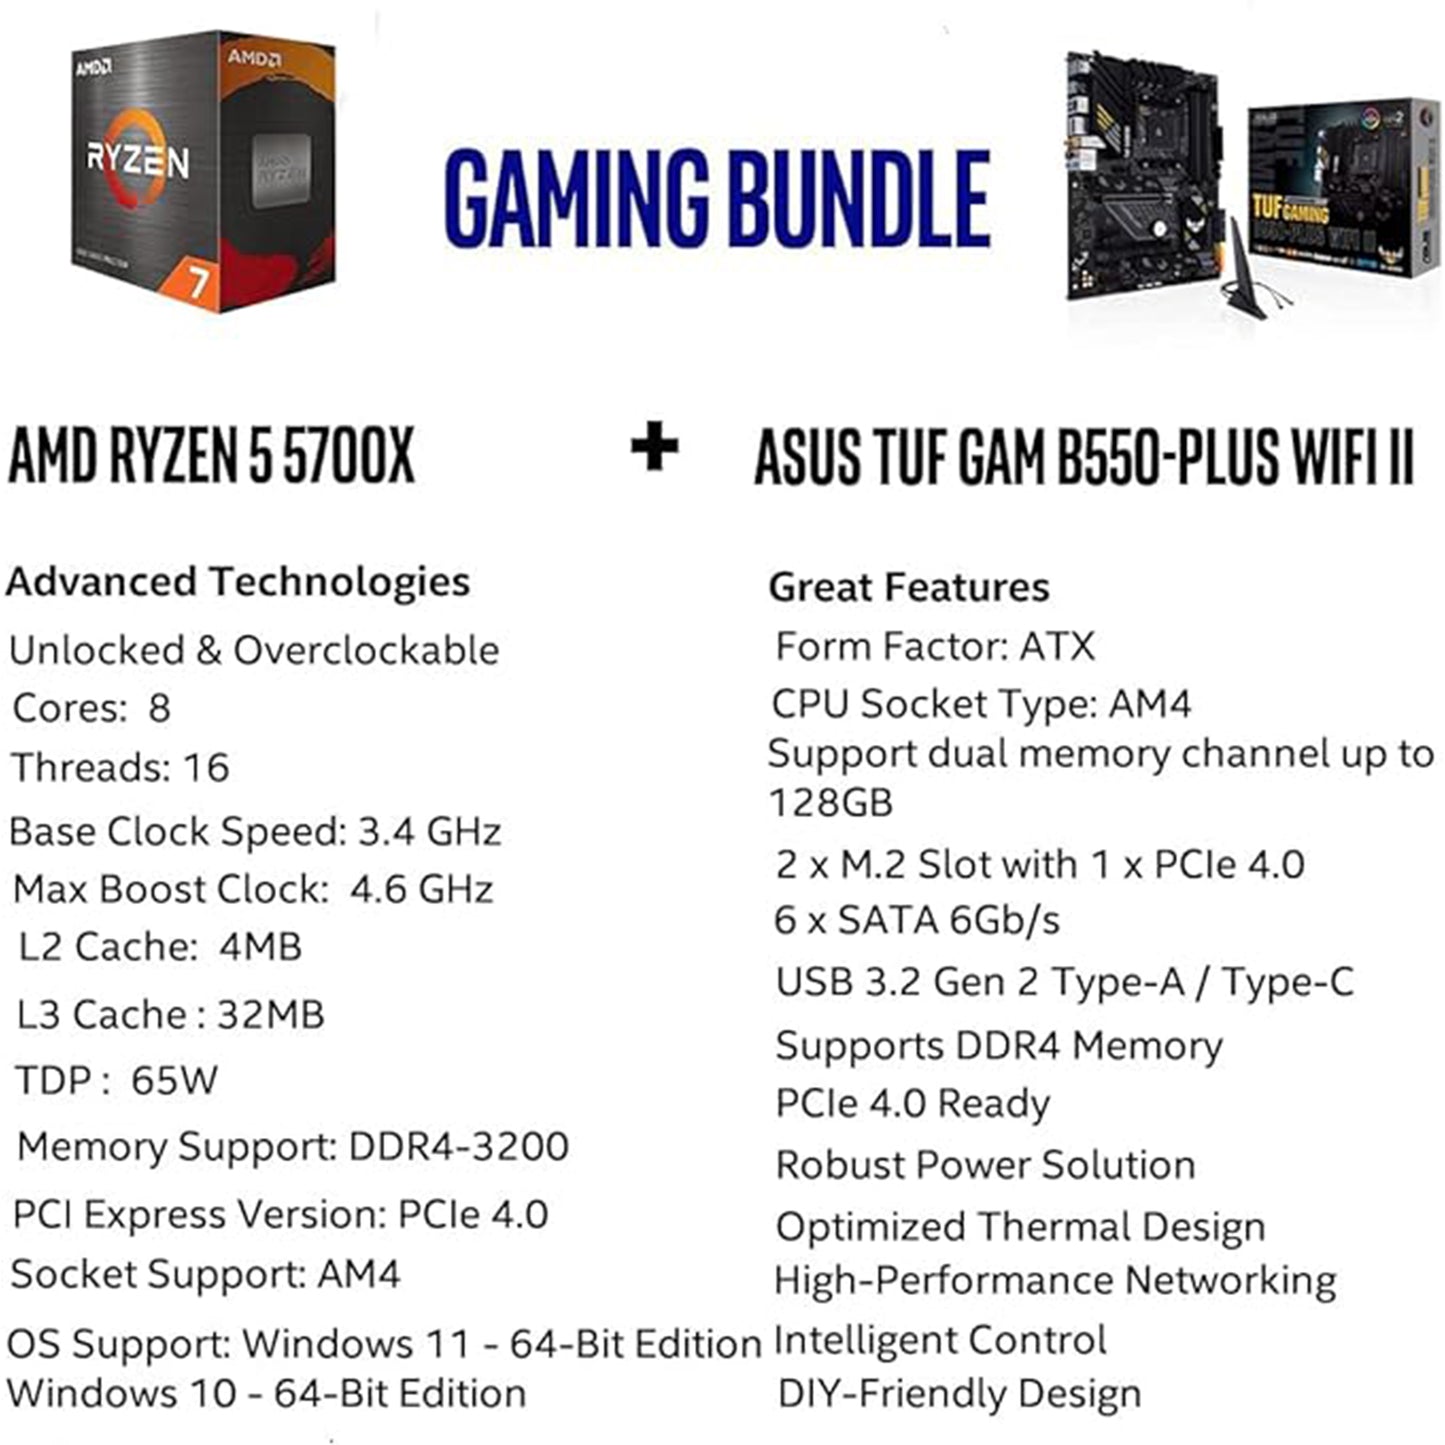 حزمة معالج سطح المكتب Micro Center AMD Ryzen 7 5700X 8-Core، 16 خيط غير مقفل مع لوحة الألعاب ASUS TUF Gaming B550-PLUS WiFi II AMD AM4 ATX، وحزمة الألعاب 